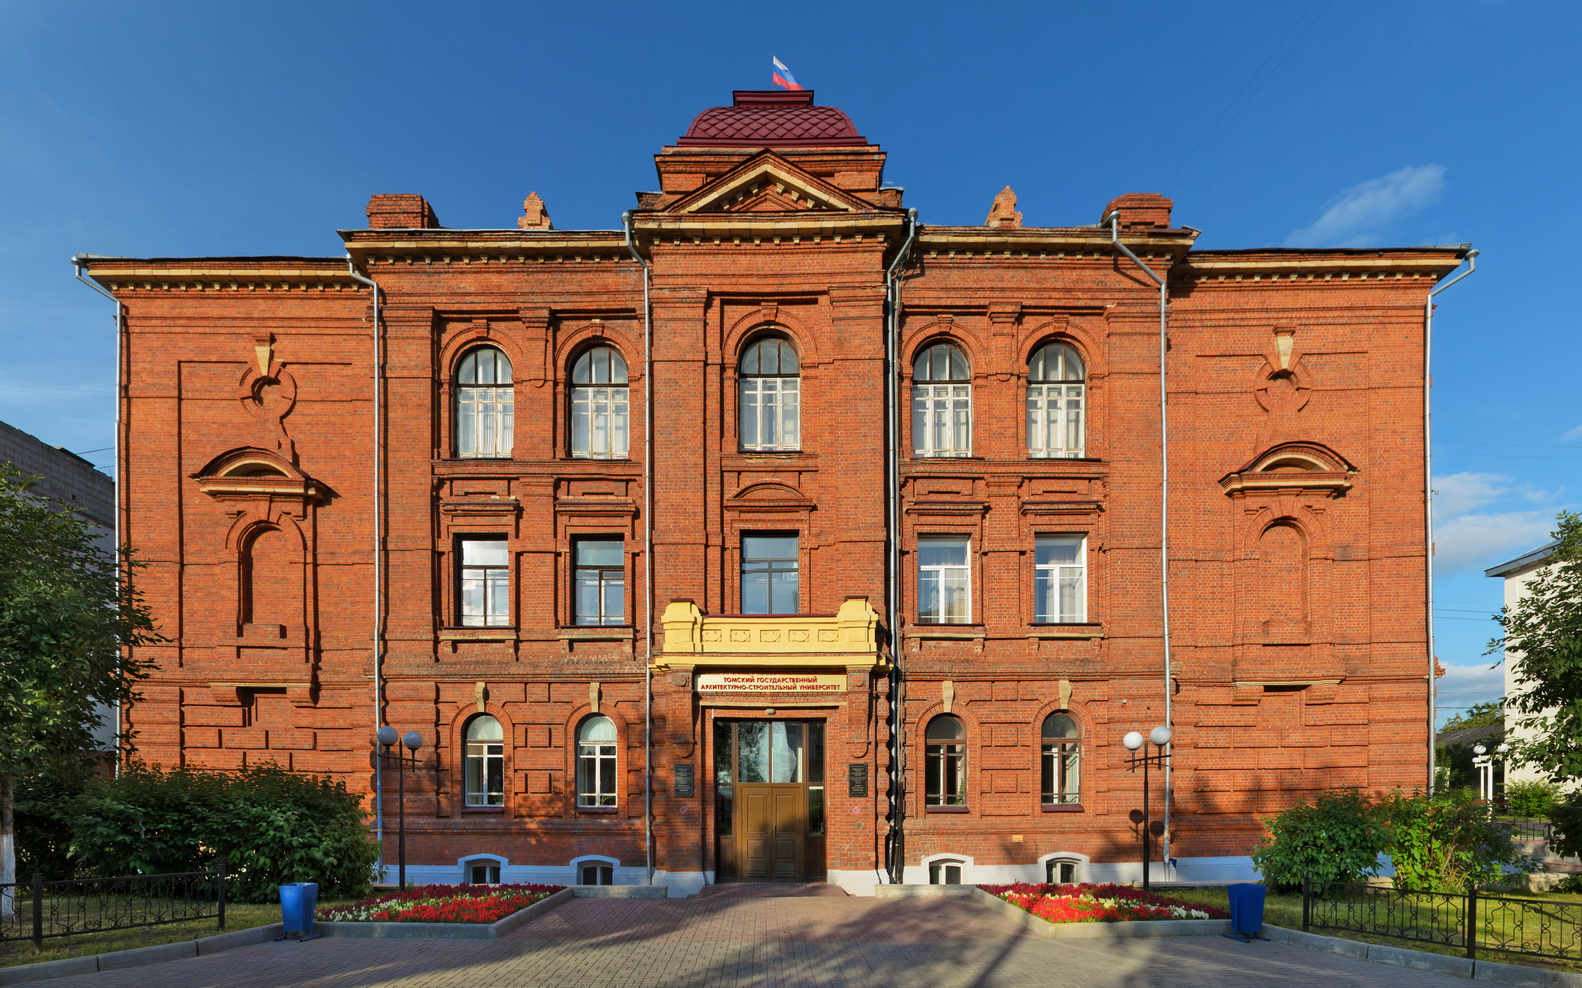 ТГАСУ – Томский государственный архитектурно-строительный университет